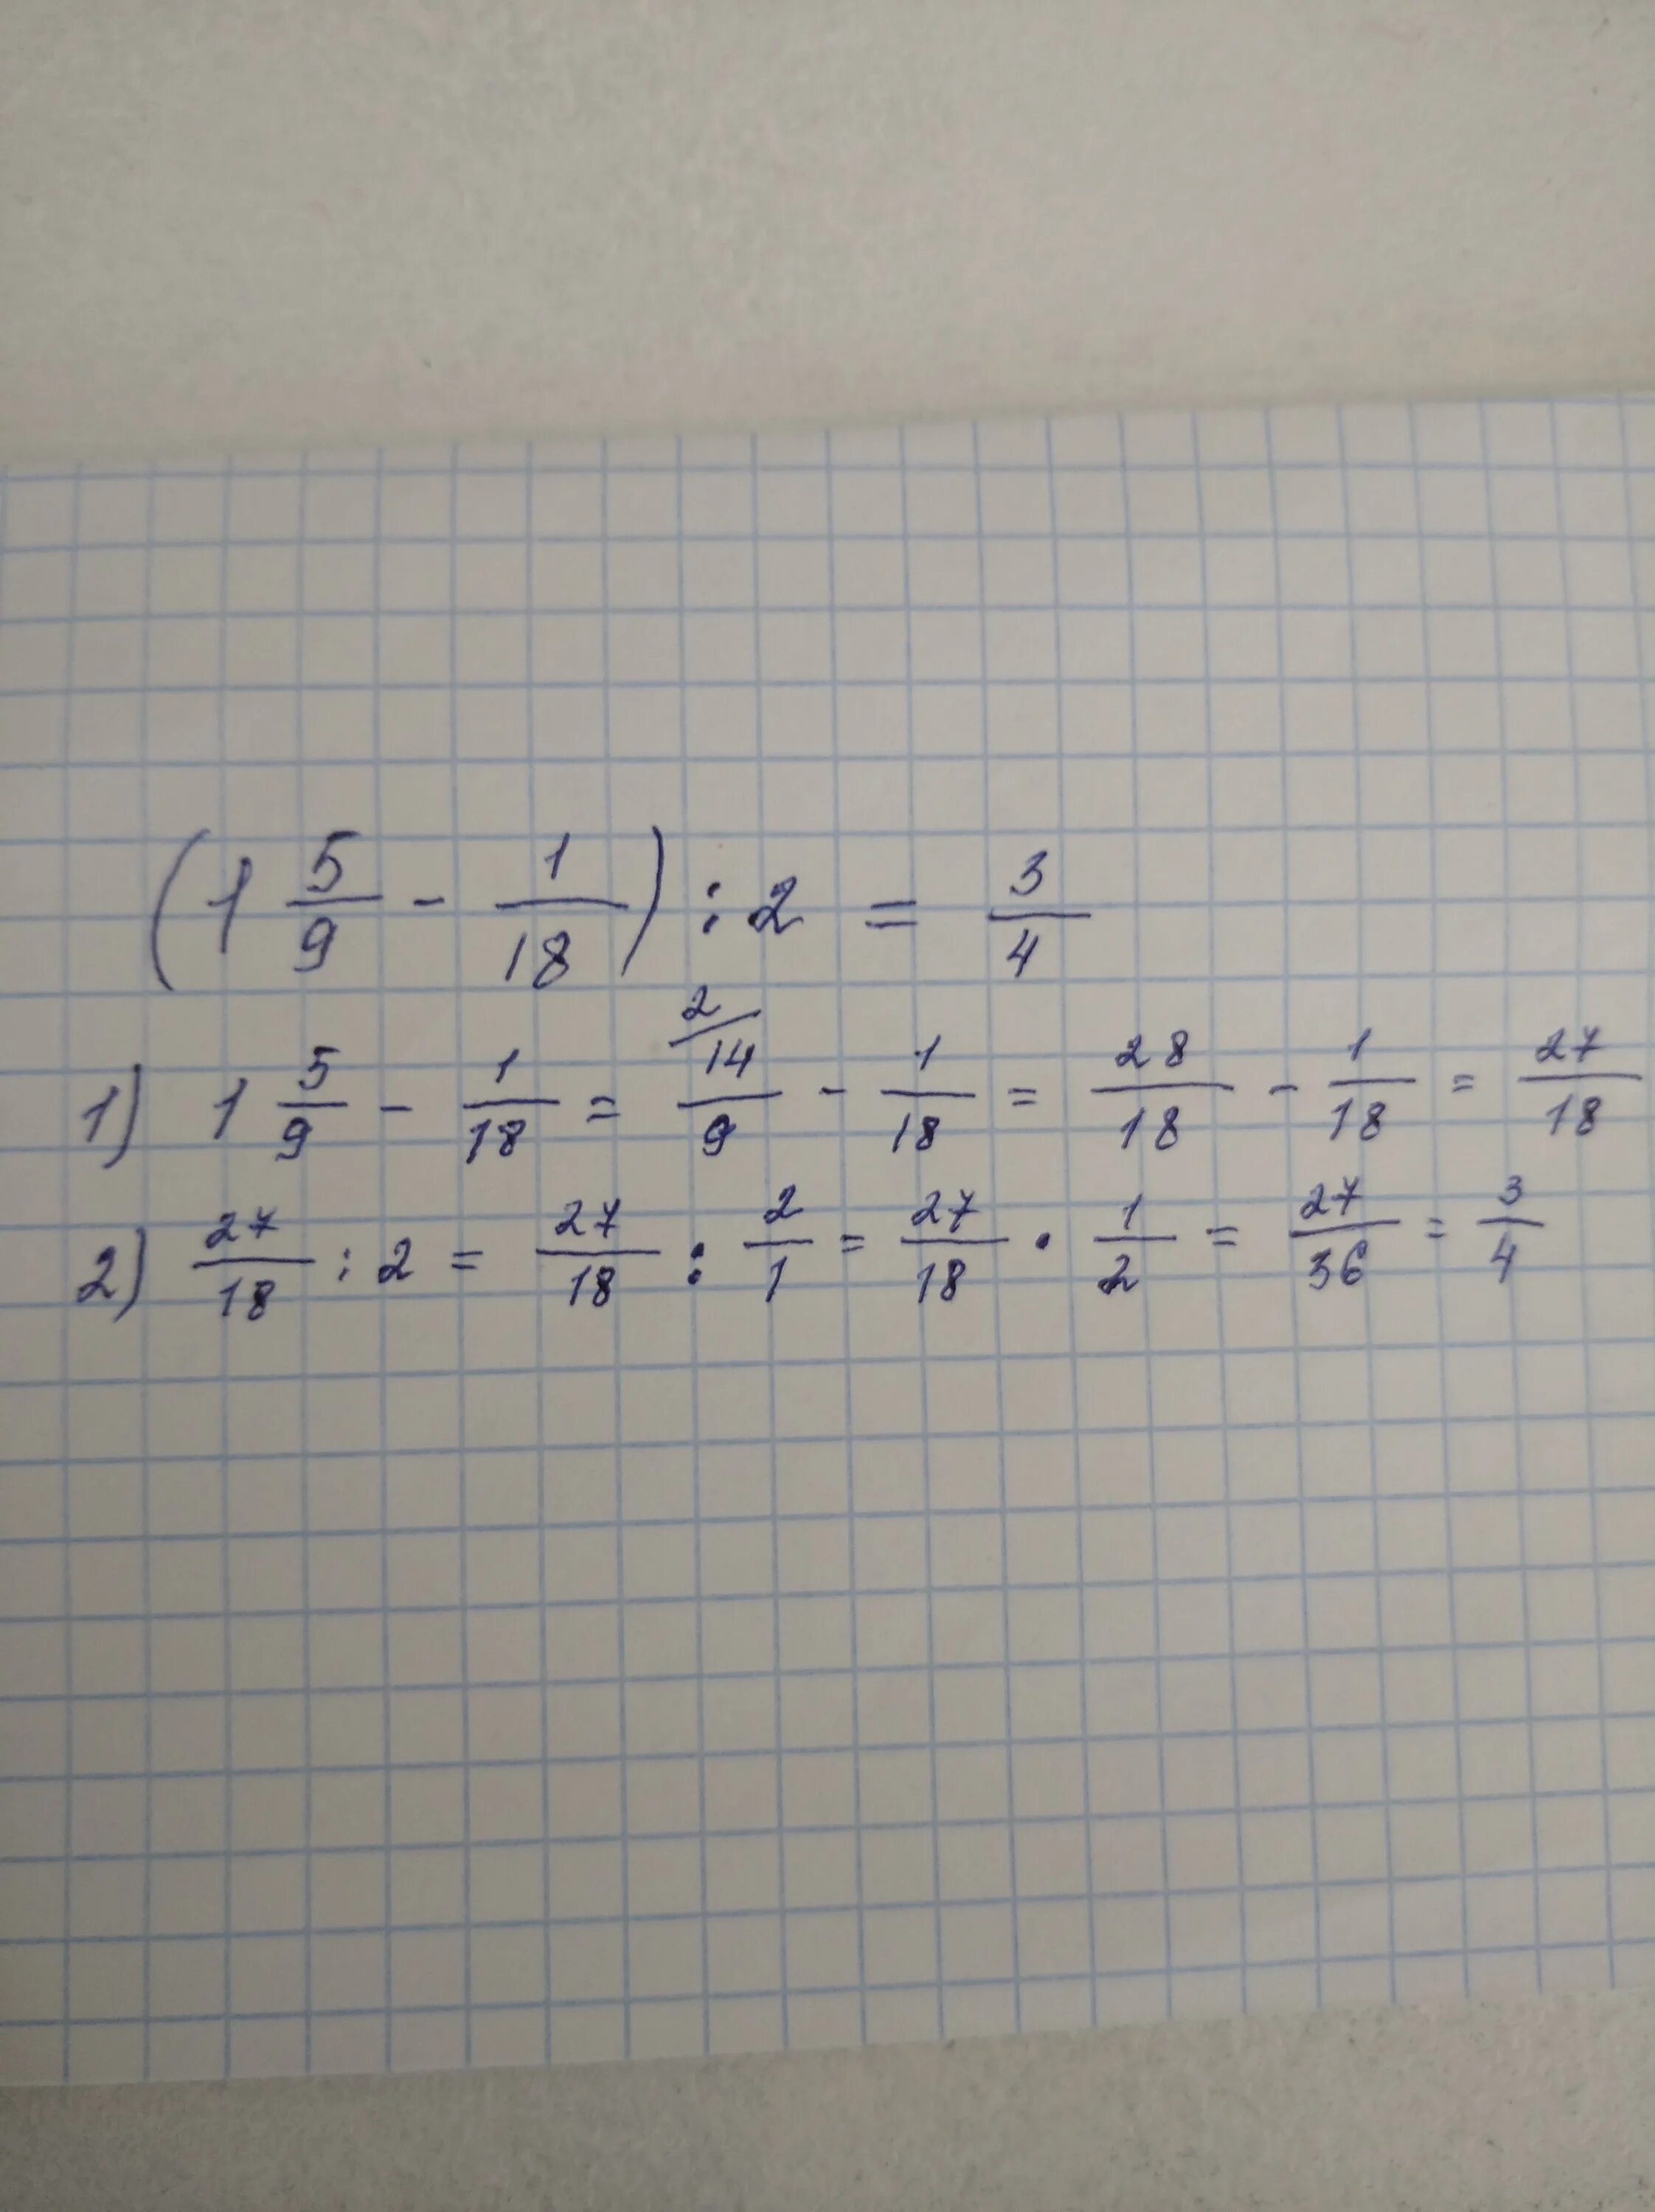 17+(27+18)/2 Решение. Как решить пример (39-57):(27-18). 18:27 Решение.